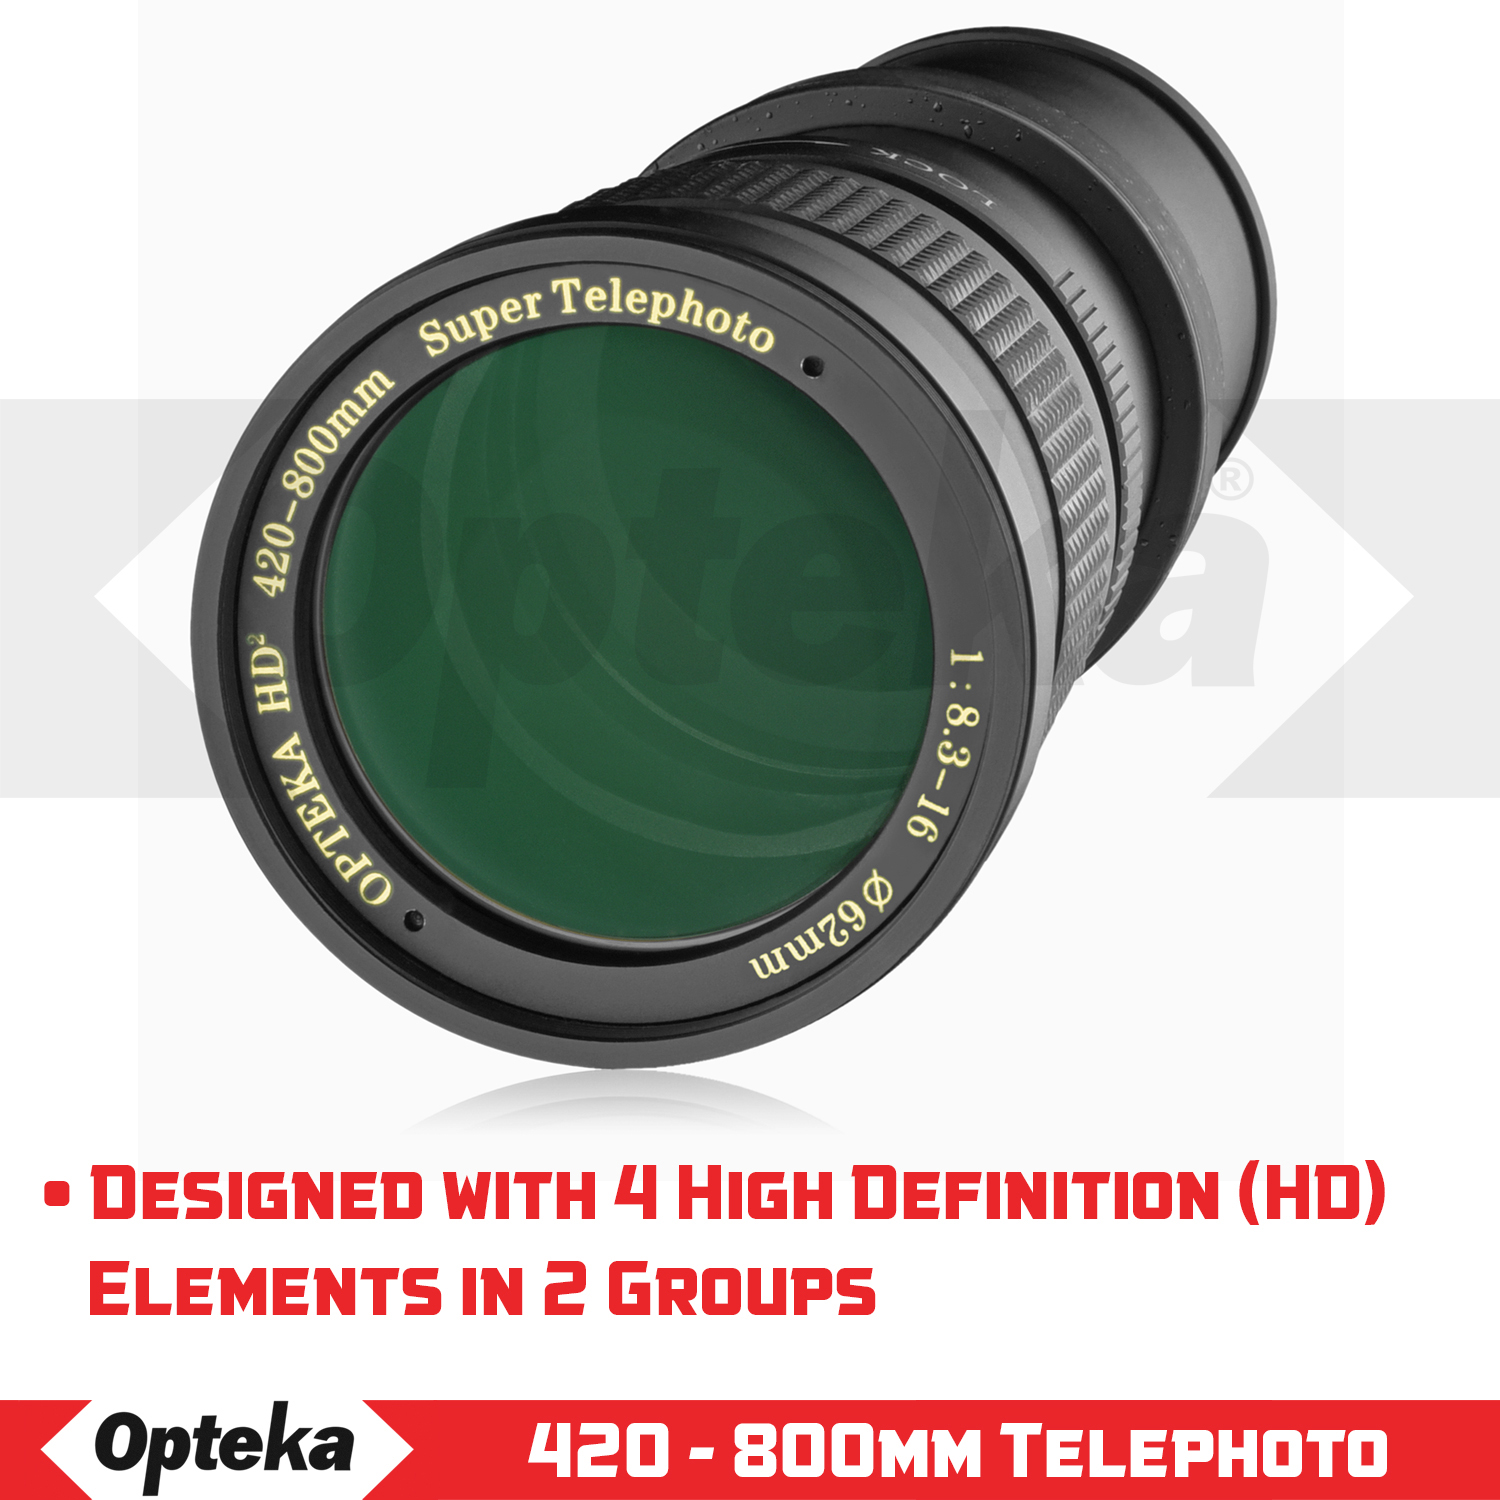 Opteka 420-800mm f/8.3 Telephoto Zoom Lens for Nikon Z6, Z7, Z50 Digital Mirrorless Digital SLR Cameras - image 3 of 10